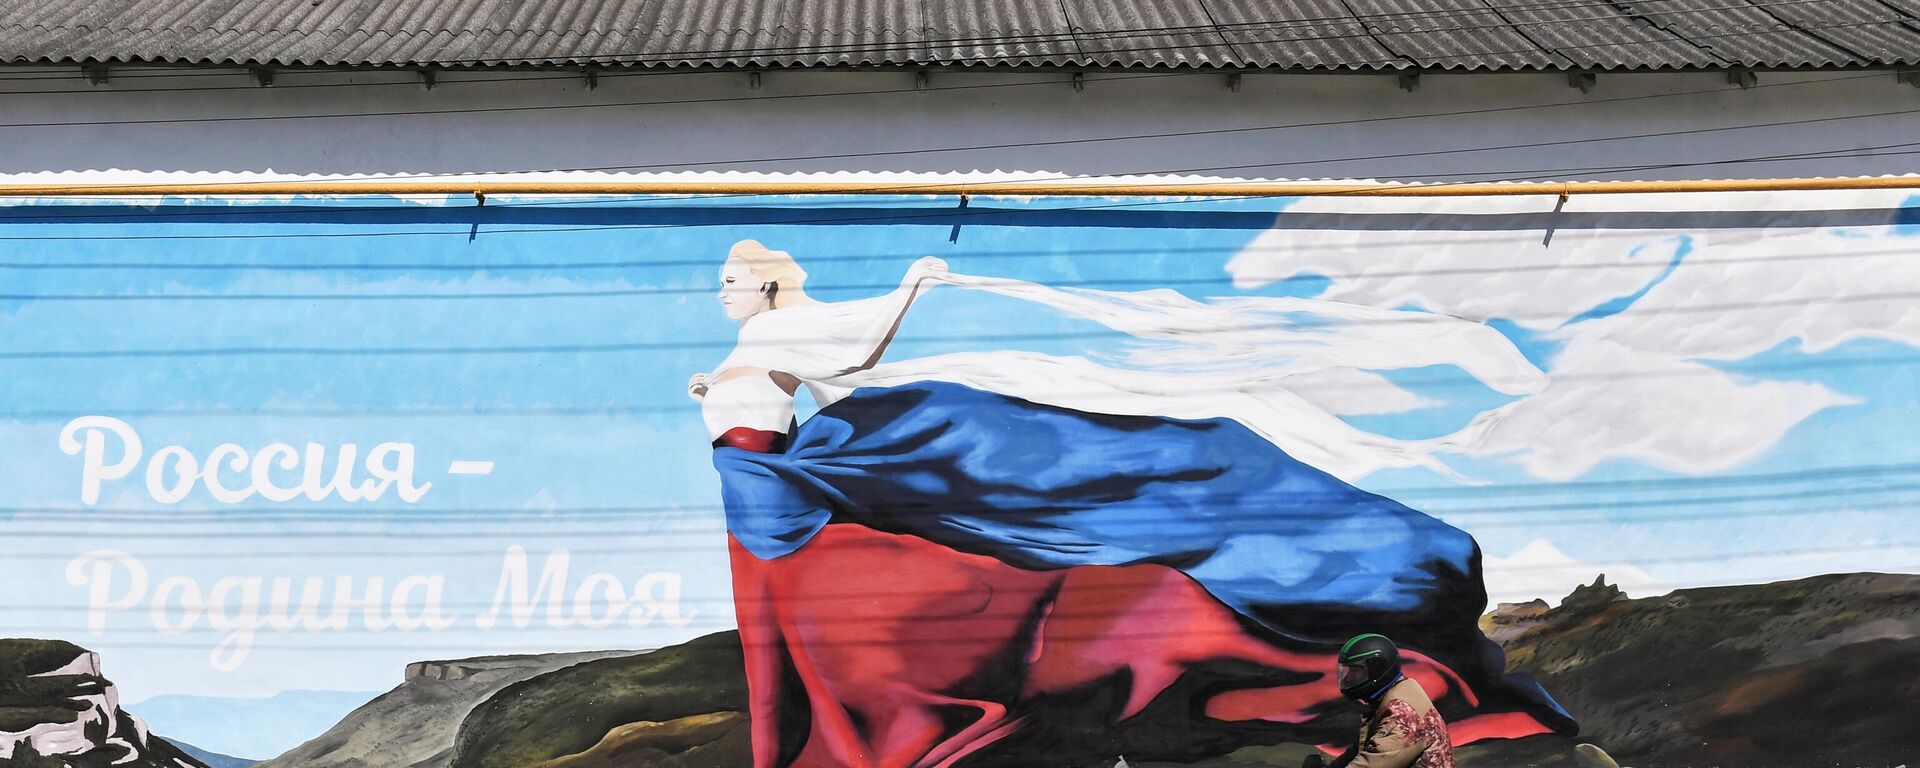 Графит Русија - моја домовина на зиду у Бахчисарају на Криму - Sputnik Србија, 1920, 14.08.2021